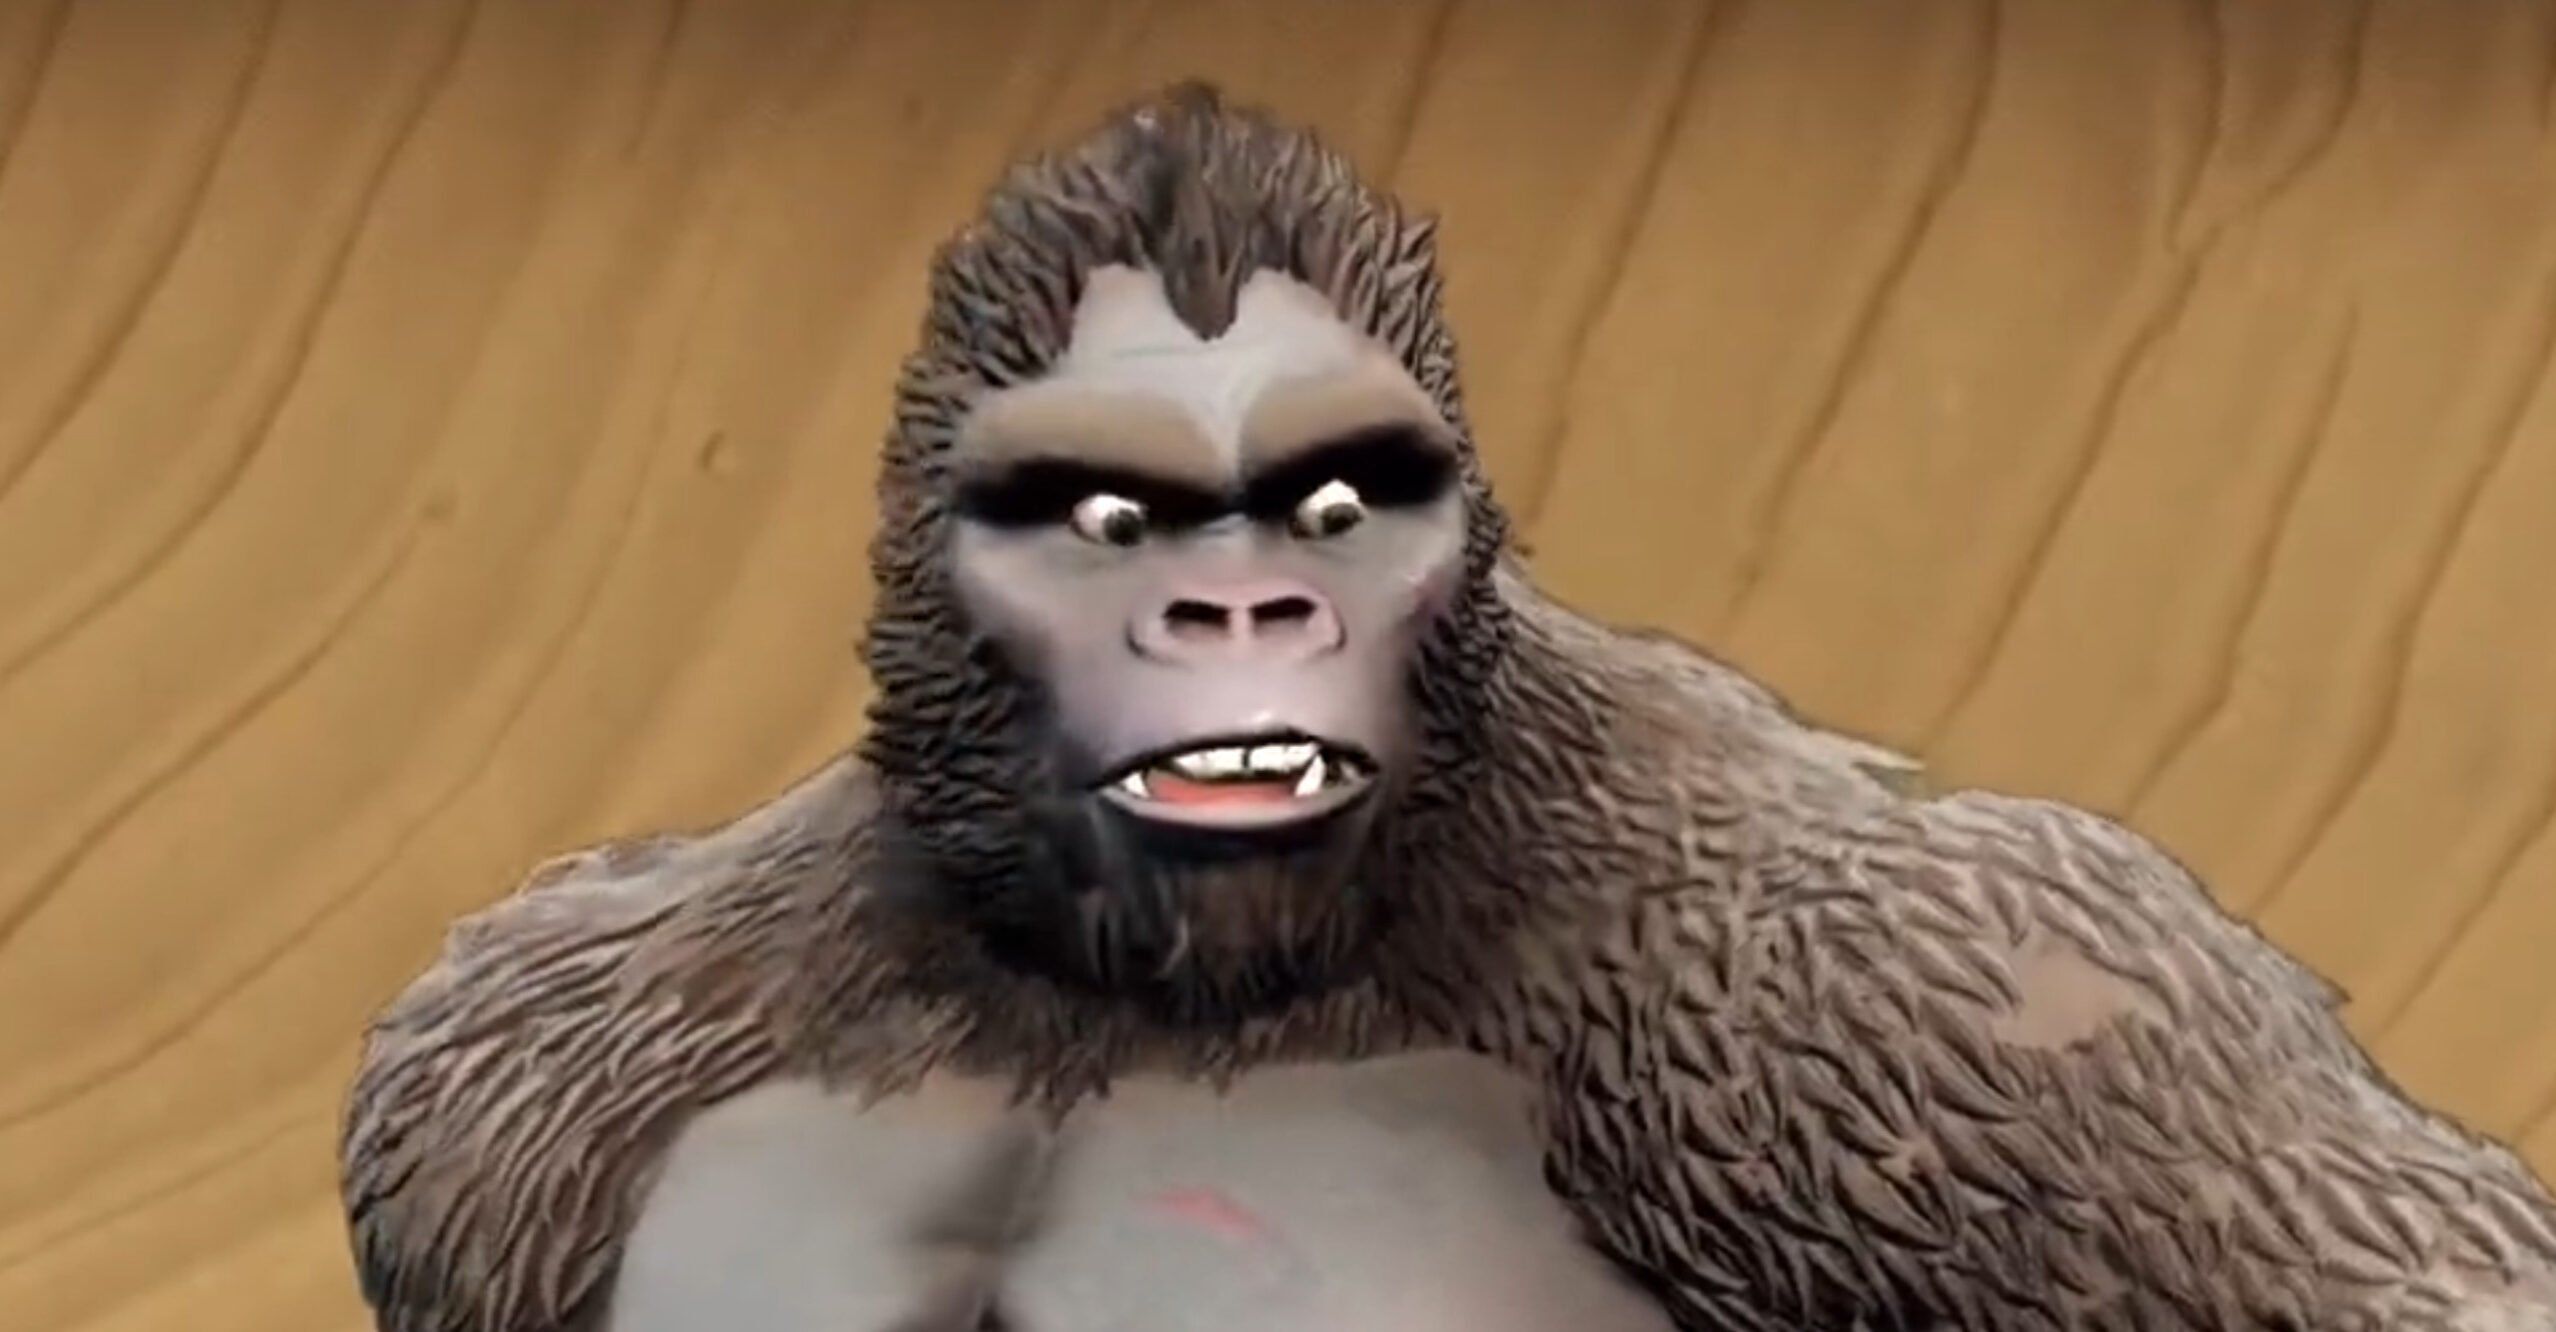 ‘Gollum được hoàn tiền’: Đồ chơi King Kong trị giá 50 đô la mới được gọi là ‘Một trò lừa đảo hoàn toàn’